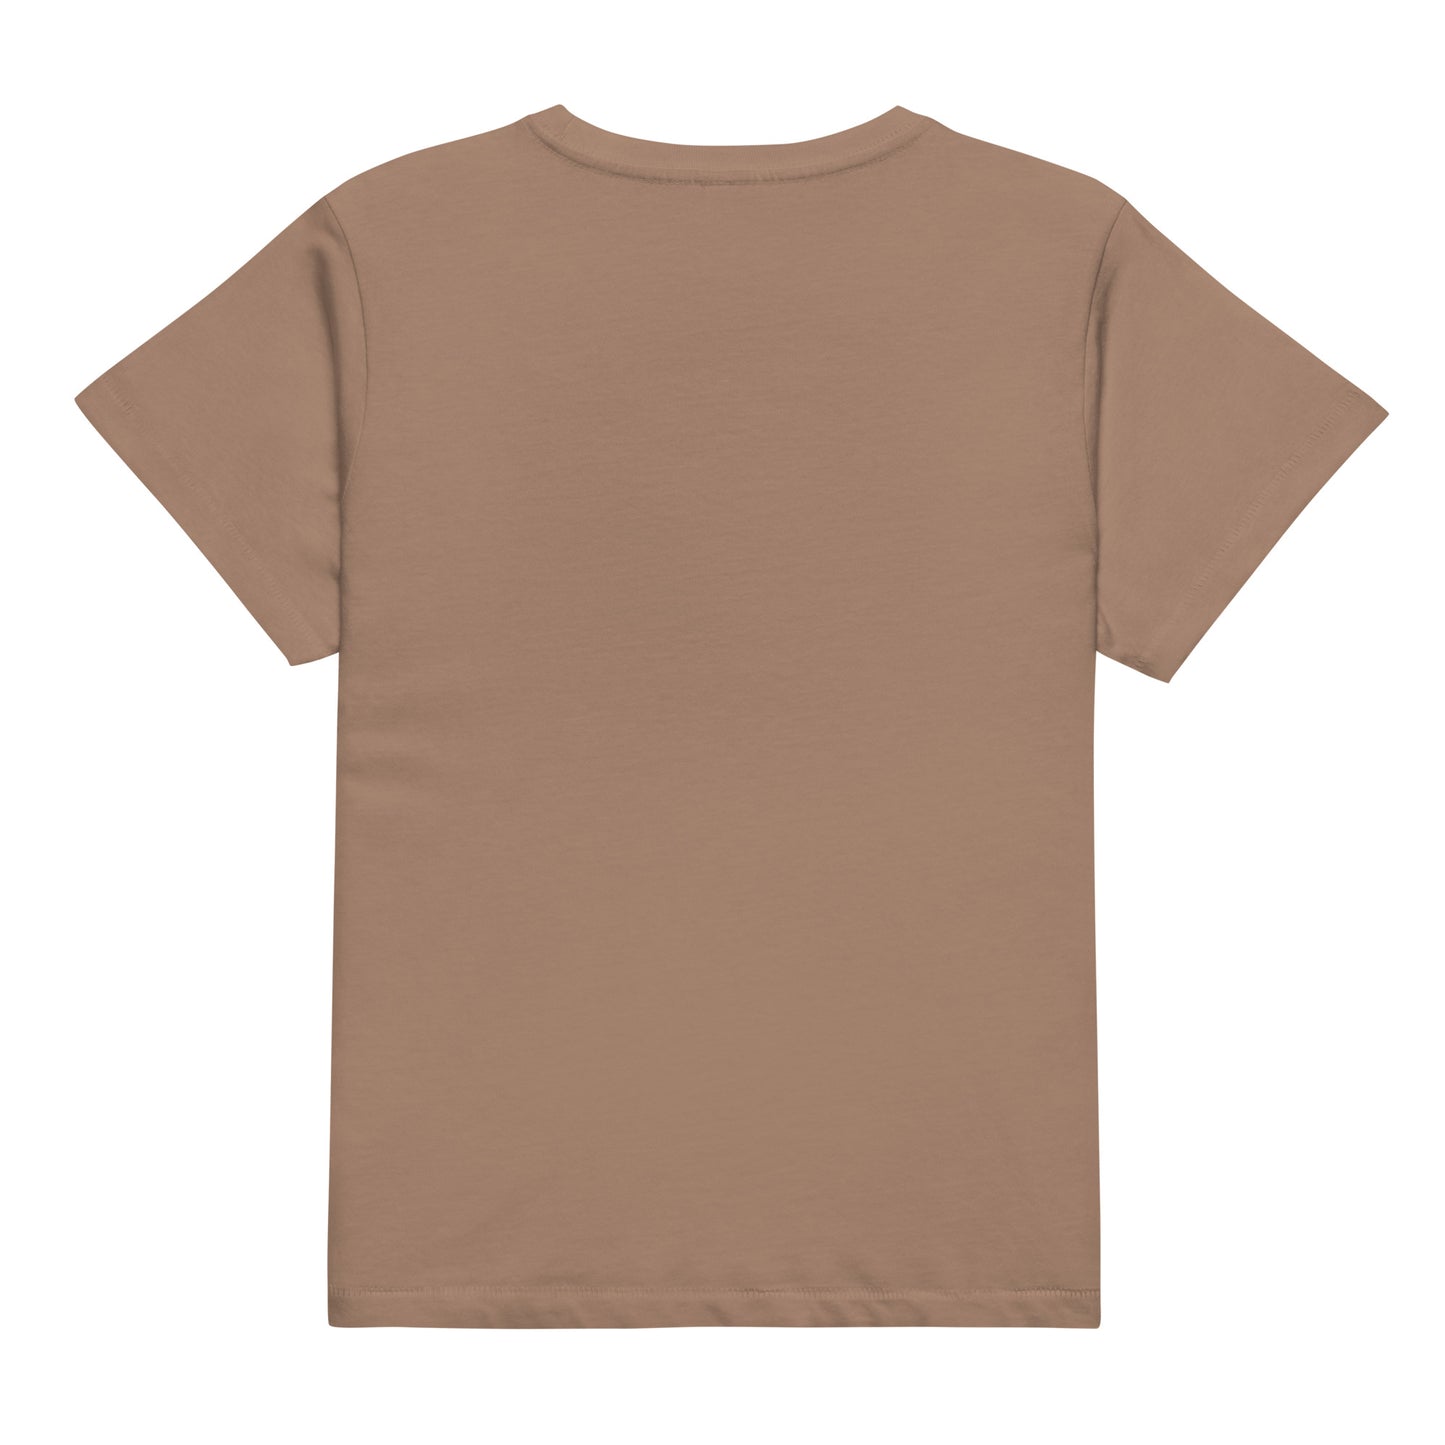 Q113 - Ladies Highwaist T-shirt (Get set! : Brown)